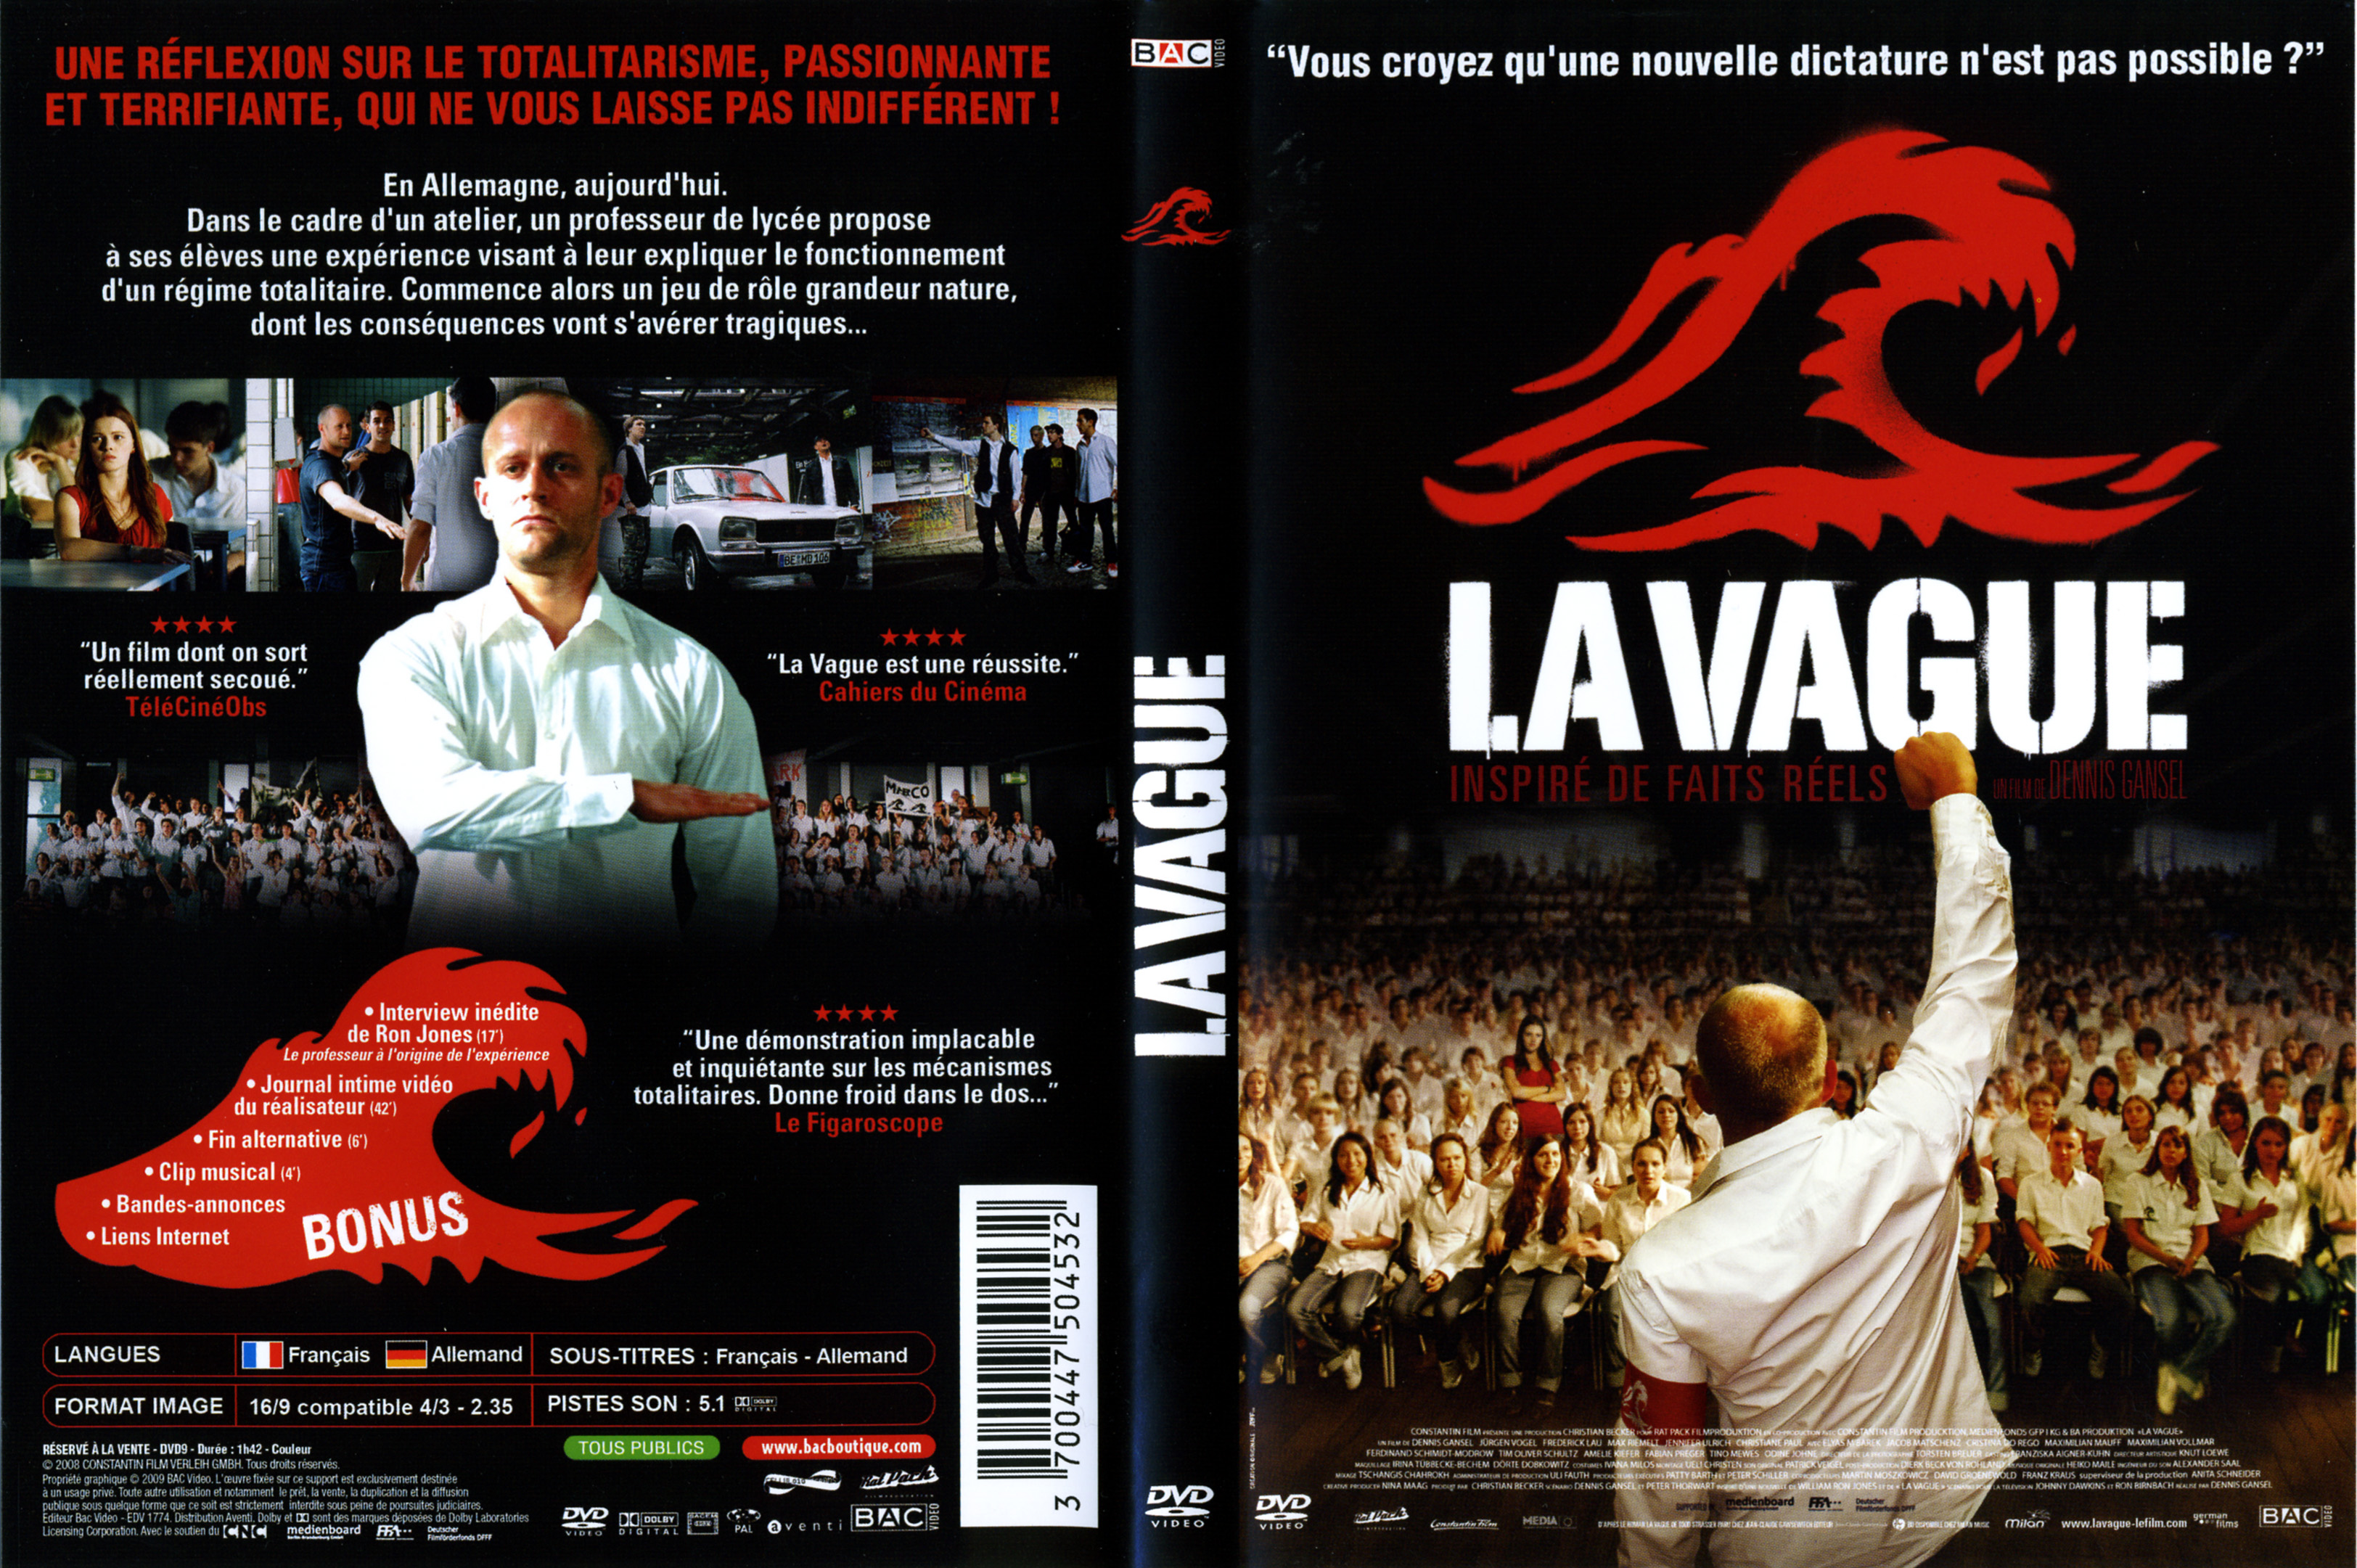 Jaquette DVD La vague